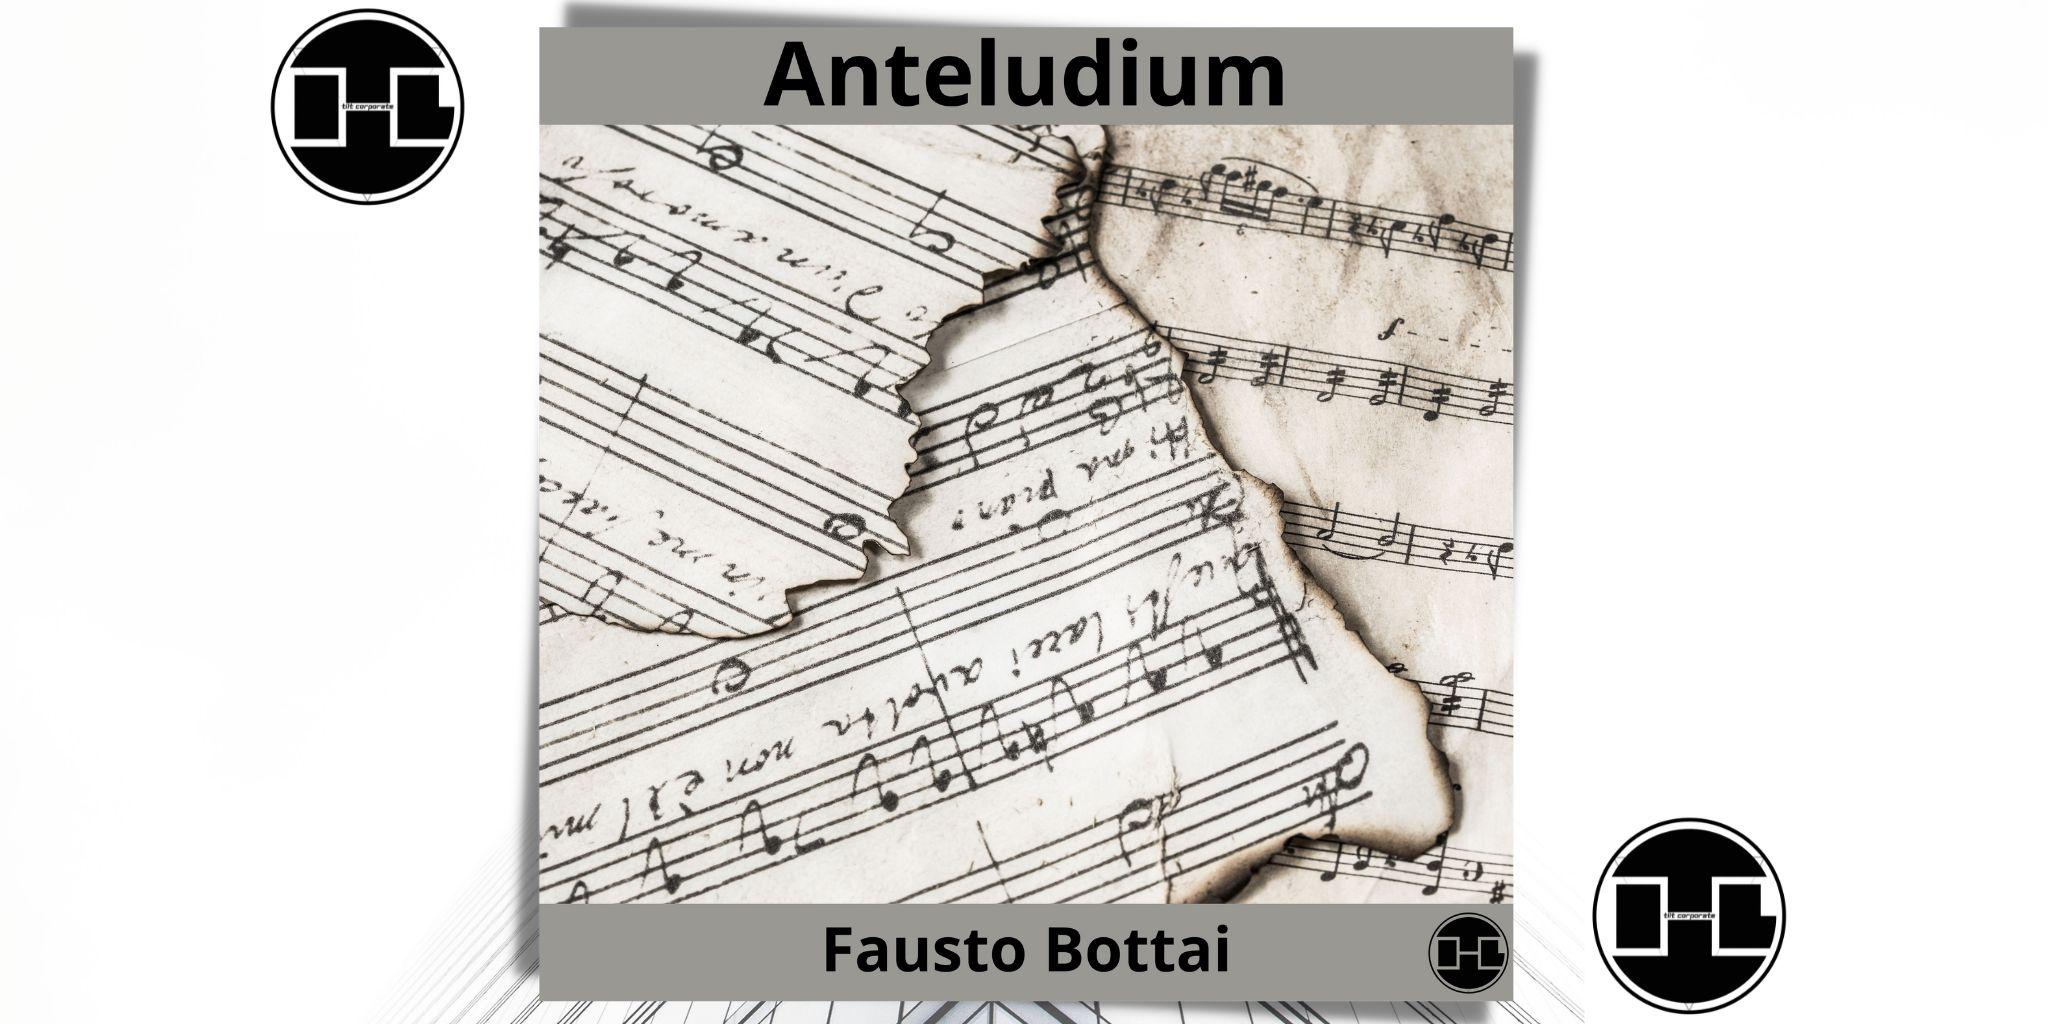 Anteludium è il nuovo brano di Fausto Bottai